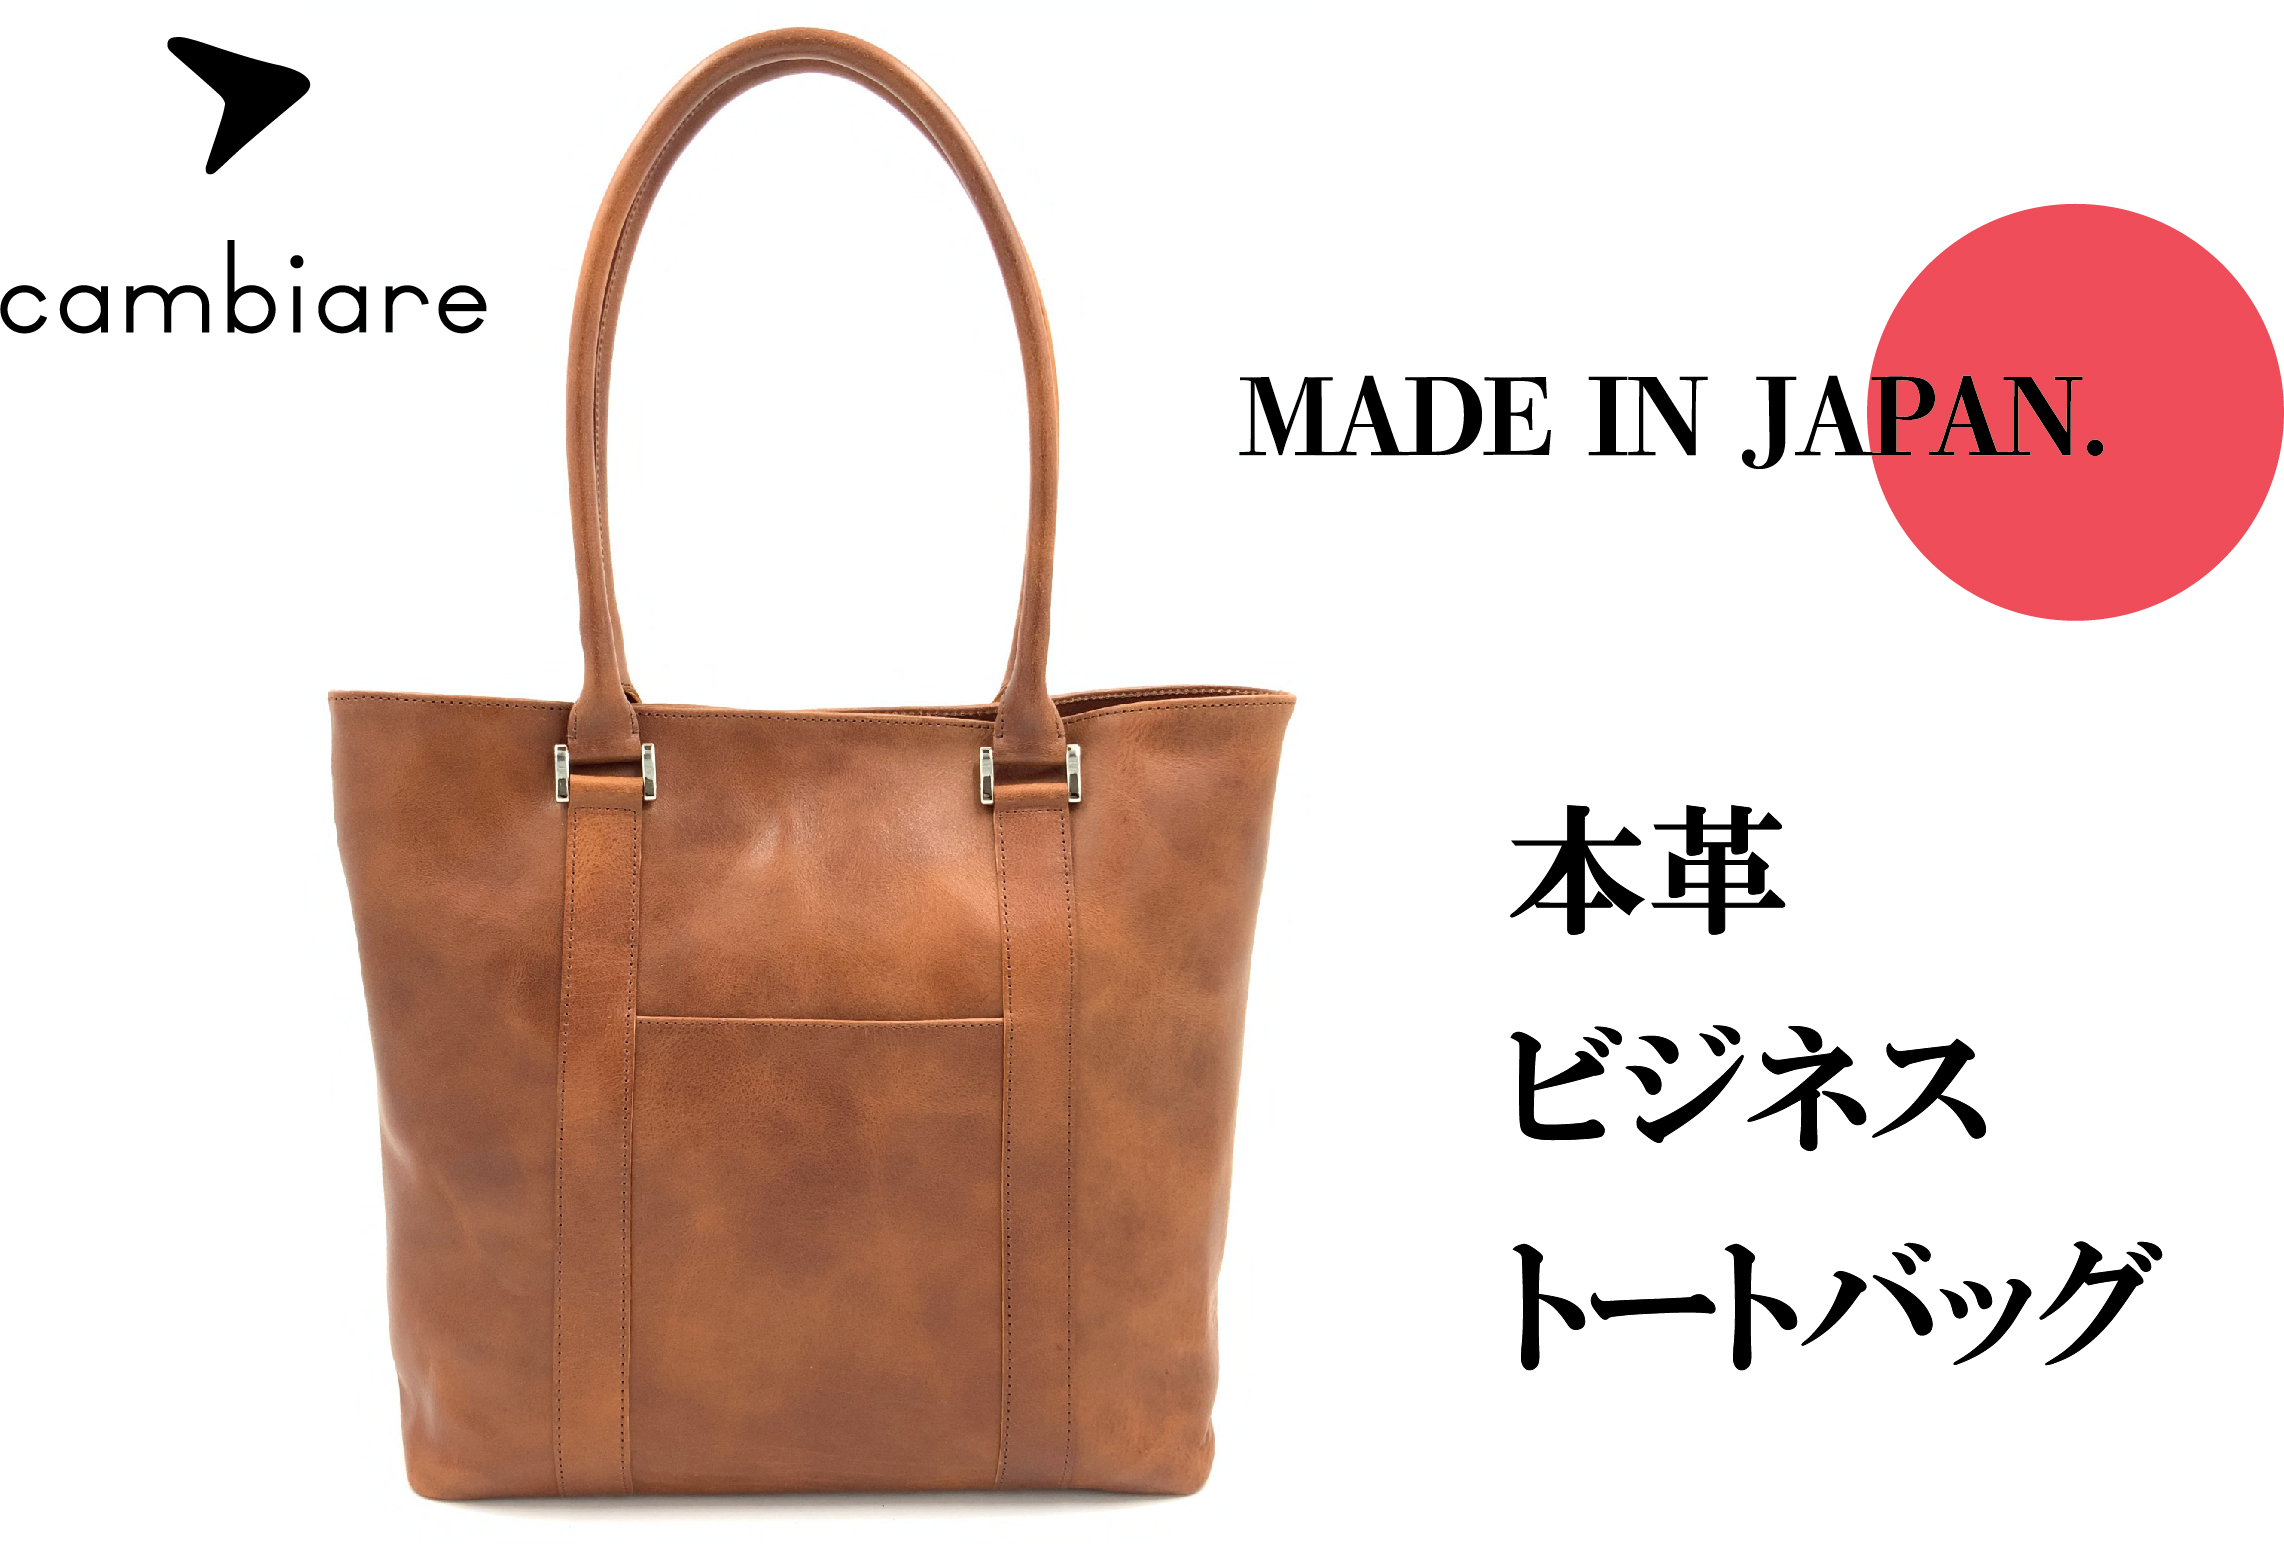 兵庫県たつの産本ヌメ革を使用。エイジングも楽しめる日本製本革トートバッグ